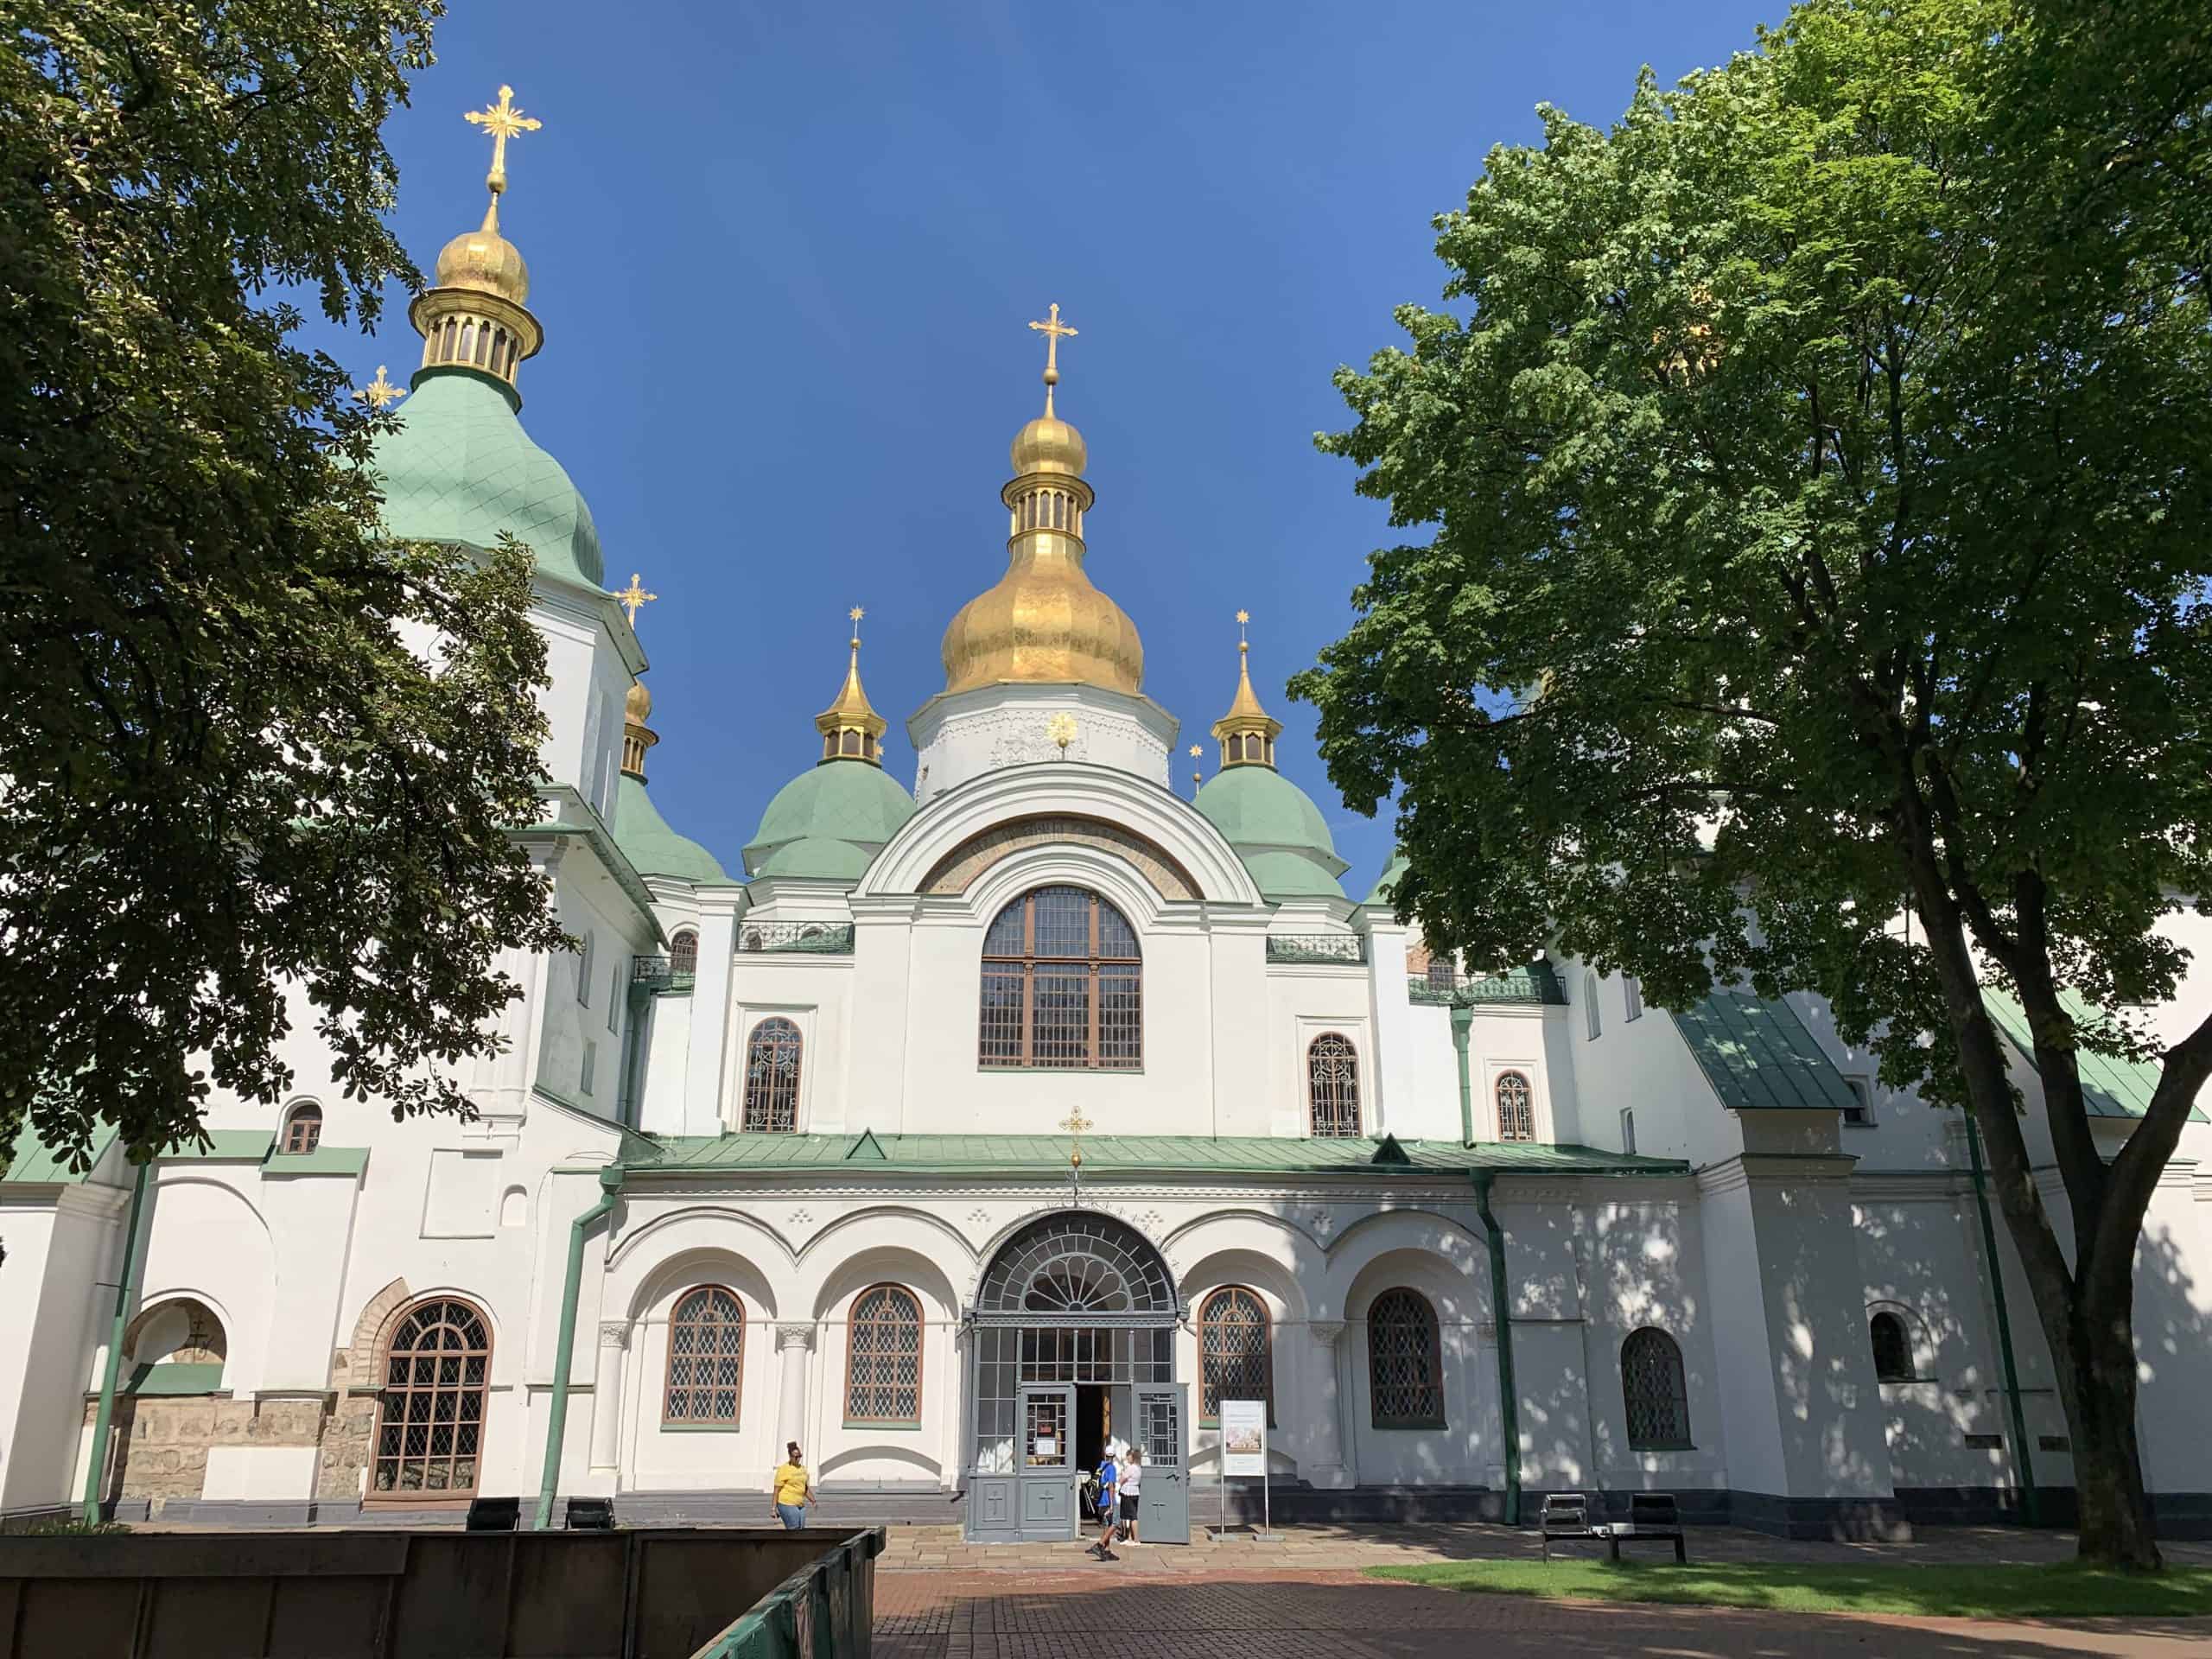 Cattedrale di Santa Sofia – Kyiv